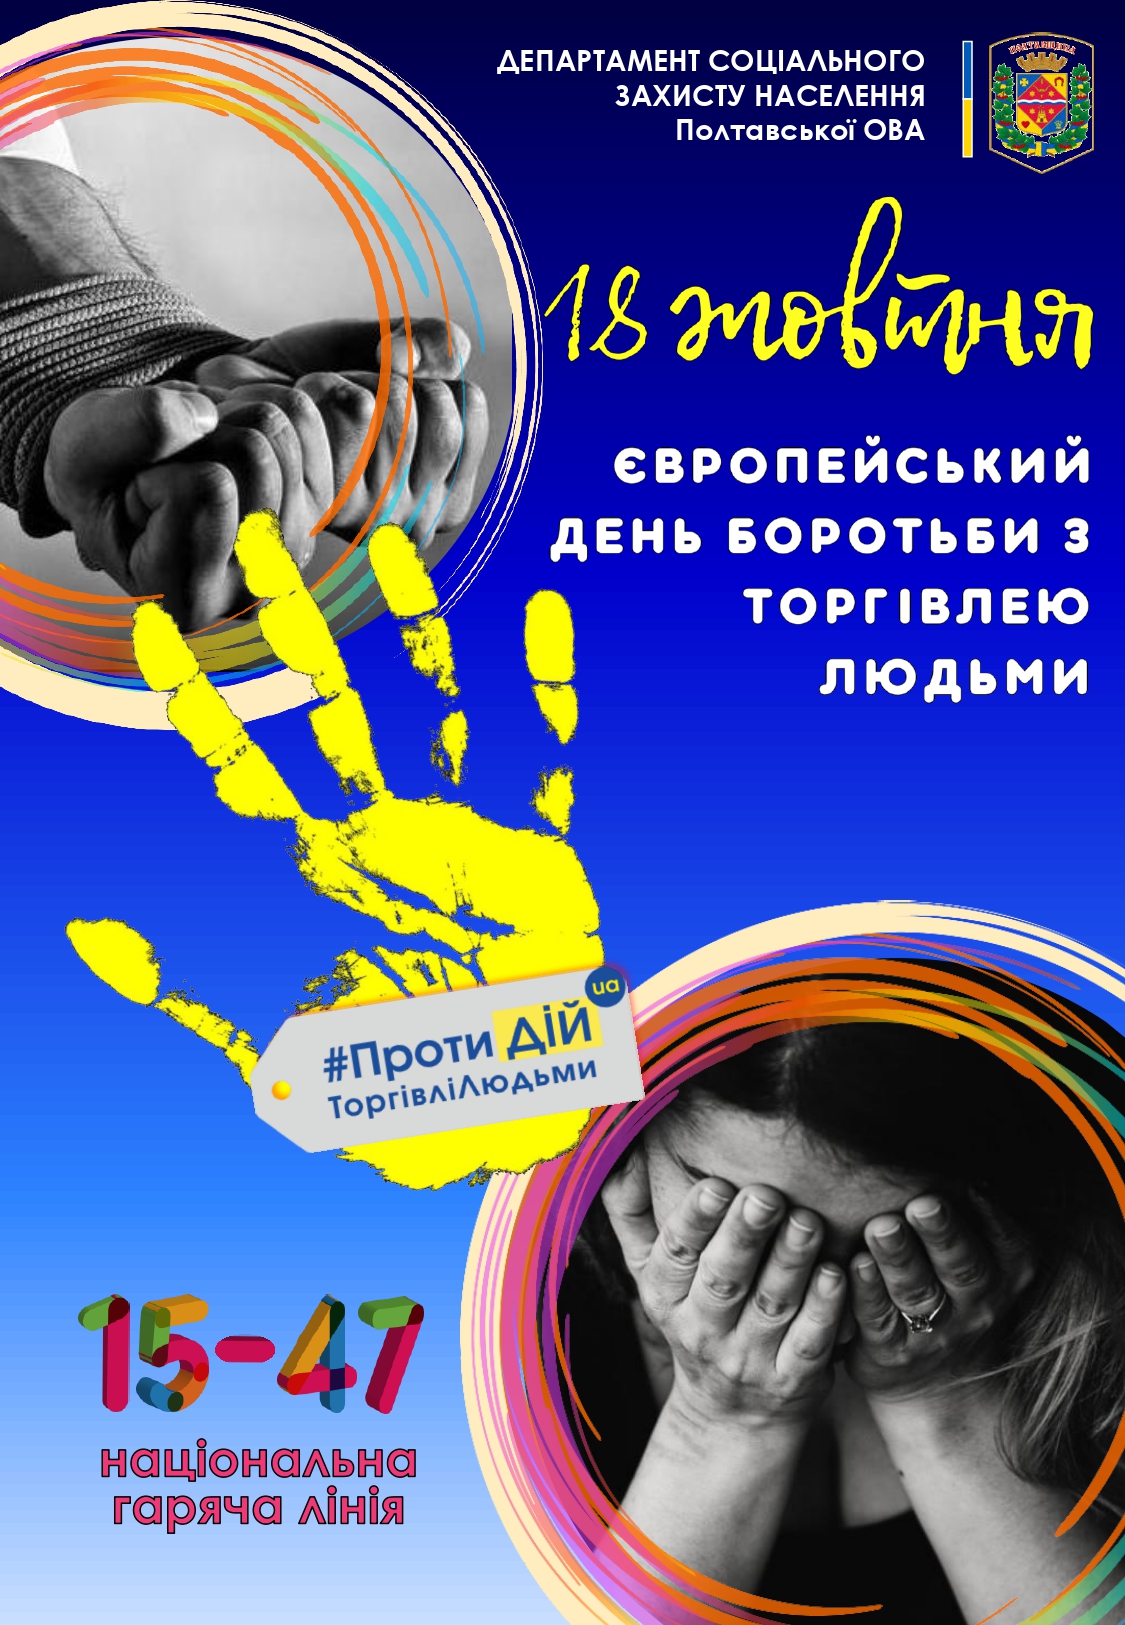 Департамент соцзахисту населення інформує: 18 жовтня – Європейський день боротьби з торгівлею людьми